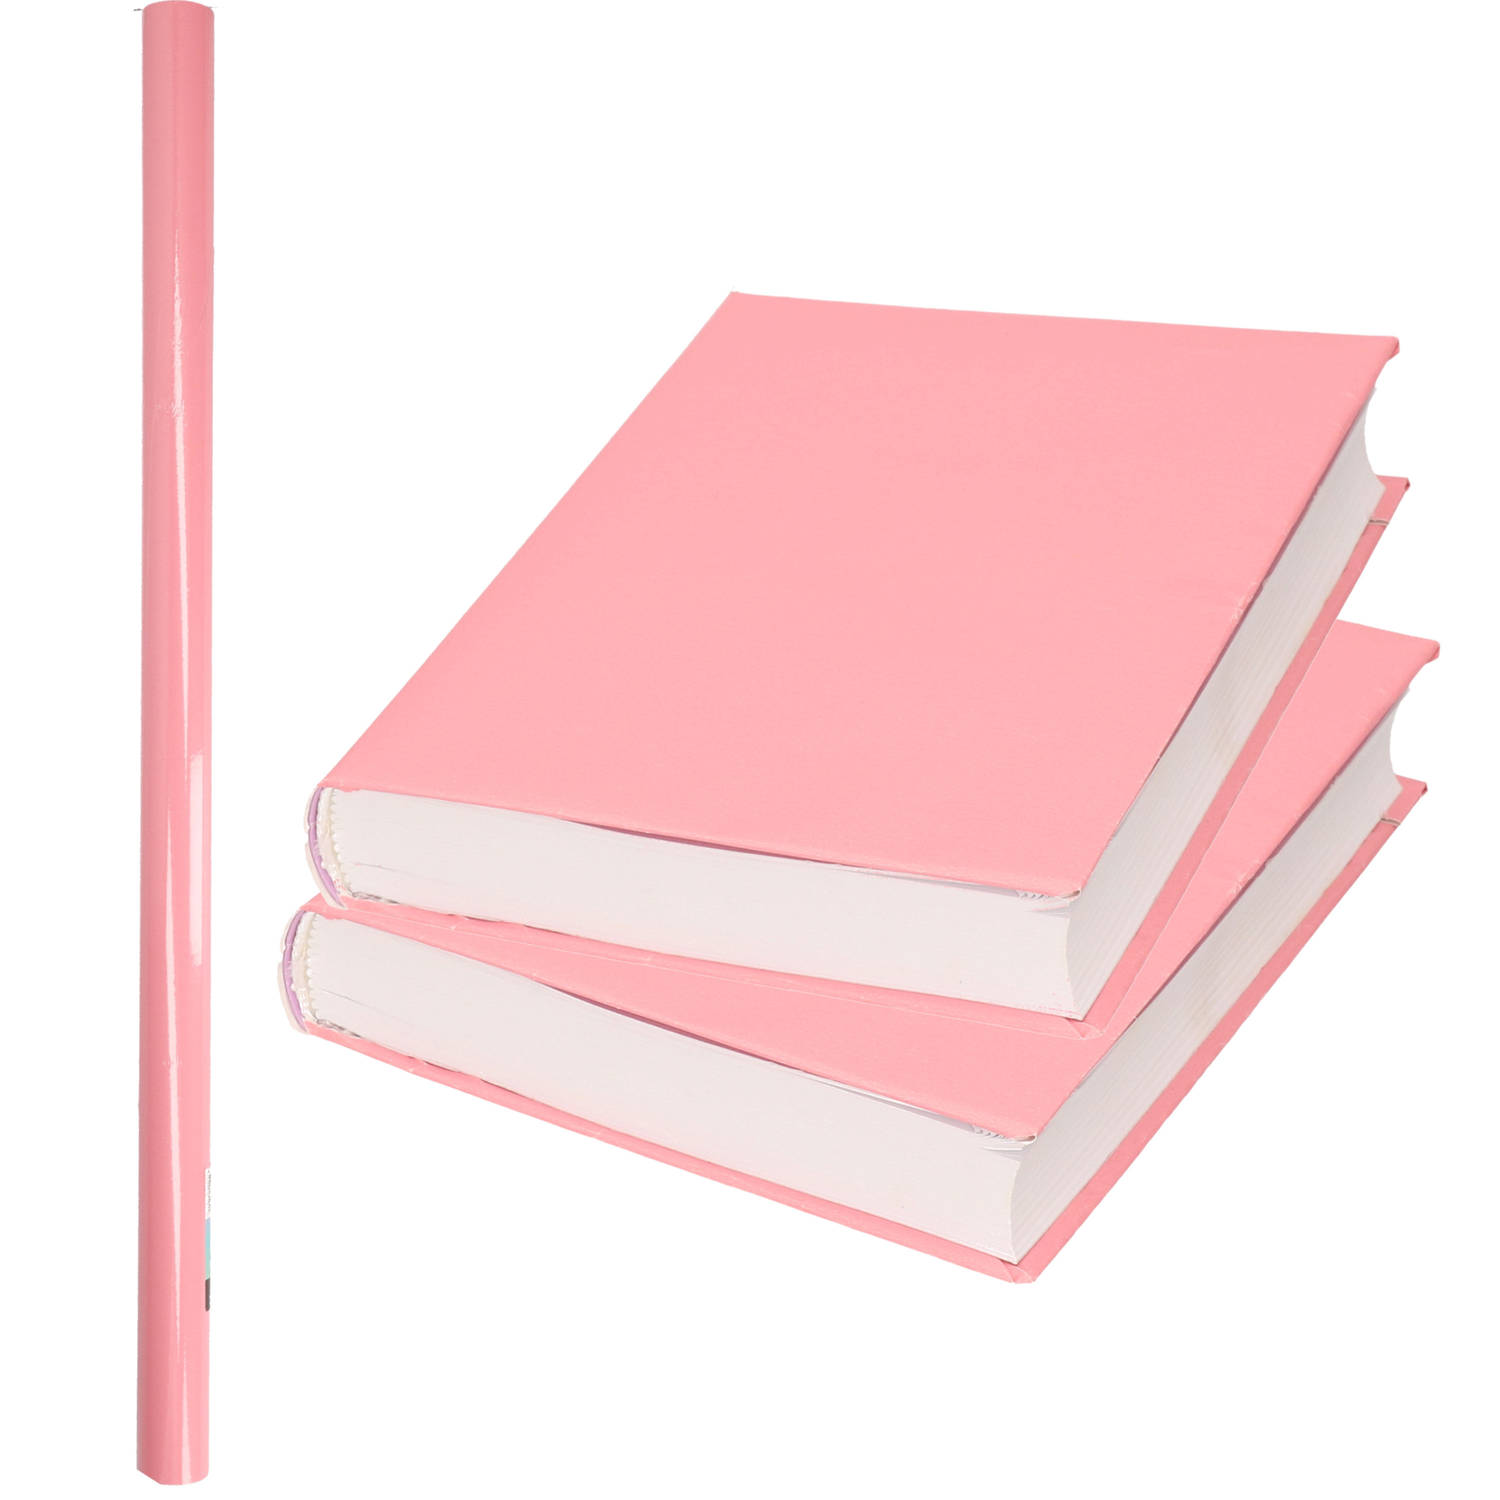 1x Rollen kadopapier / kaftpapier 200 x 70 cm - pastel roze - kaftpapier voor schoolboeken / boekenkaften